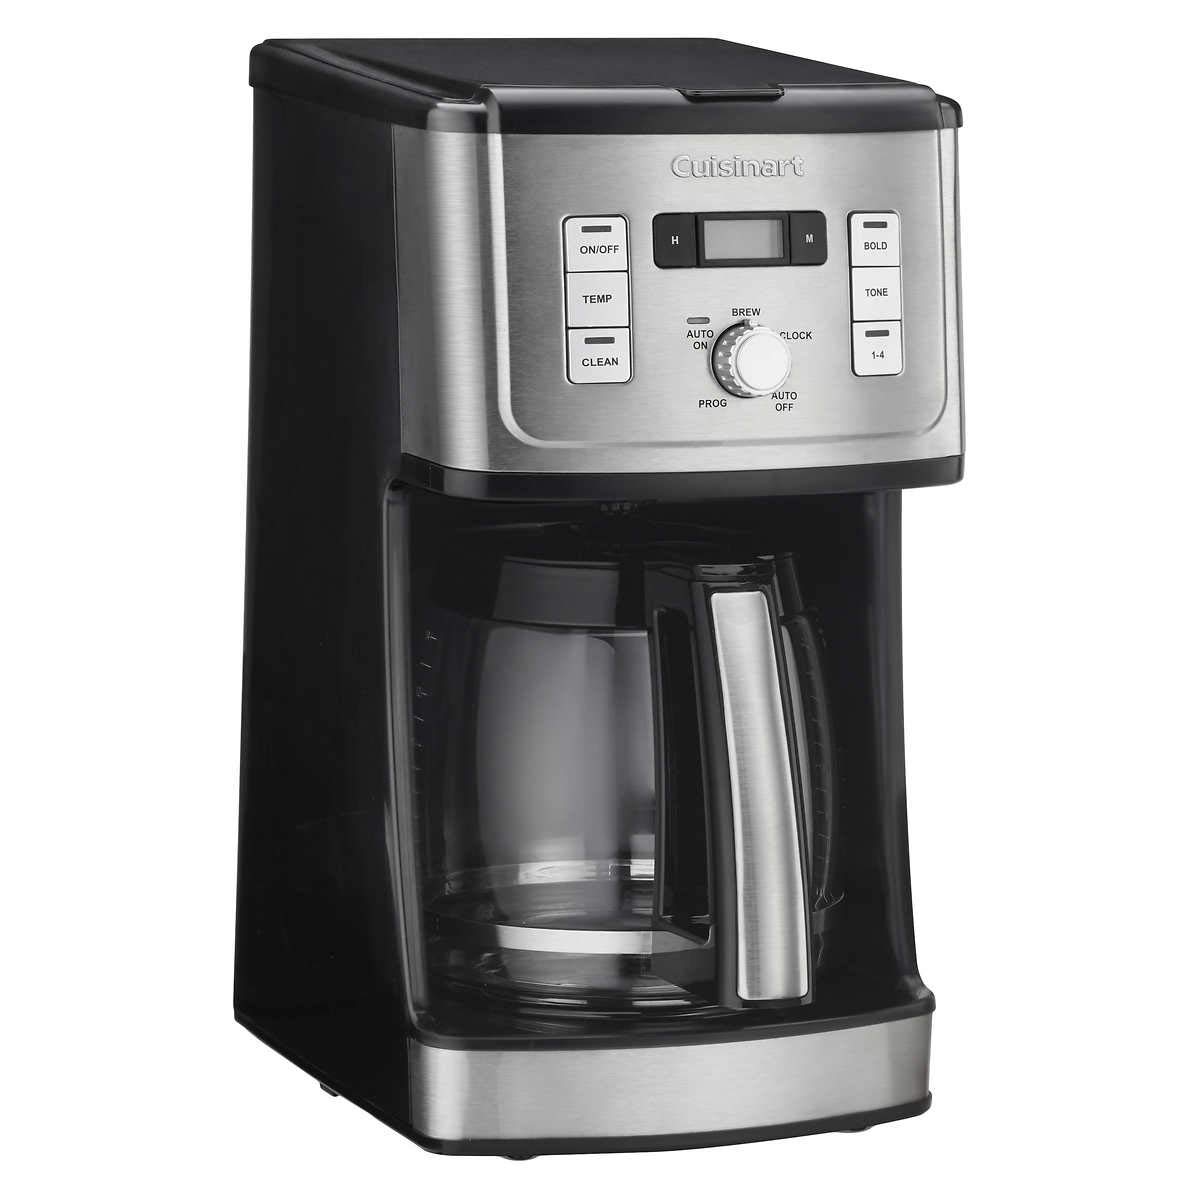 4. เครื่องชงกาแฟ Cuisinart 14-Cup Programmable Coffee Maker